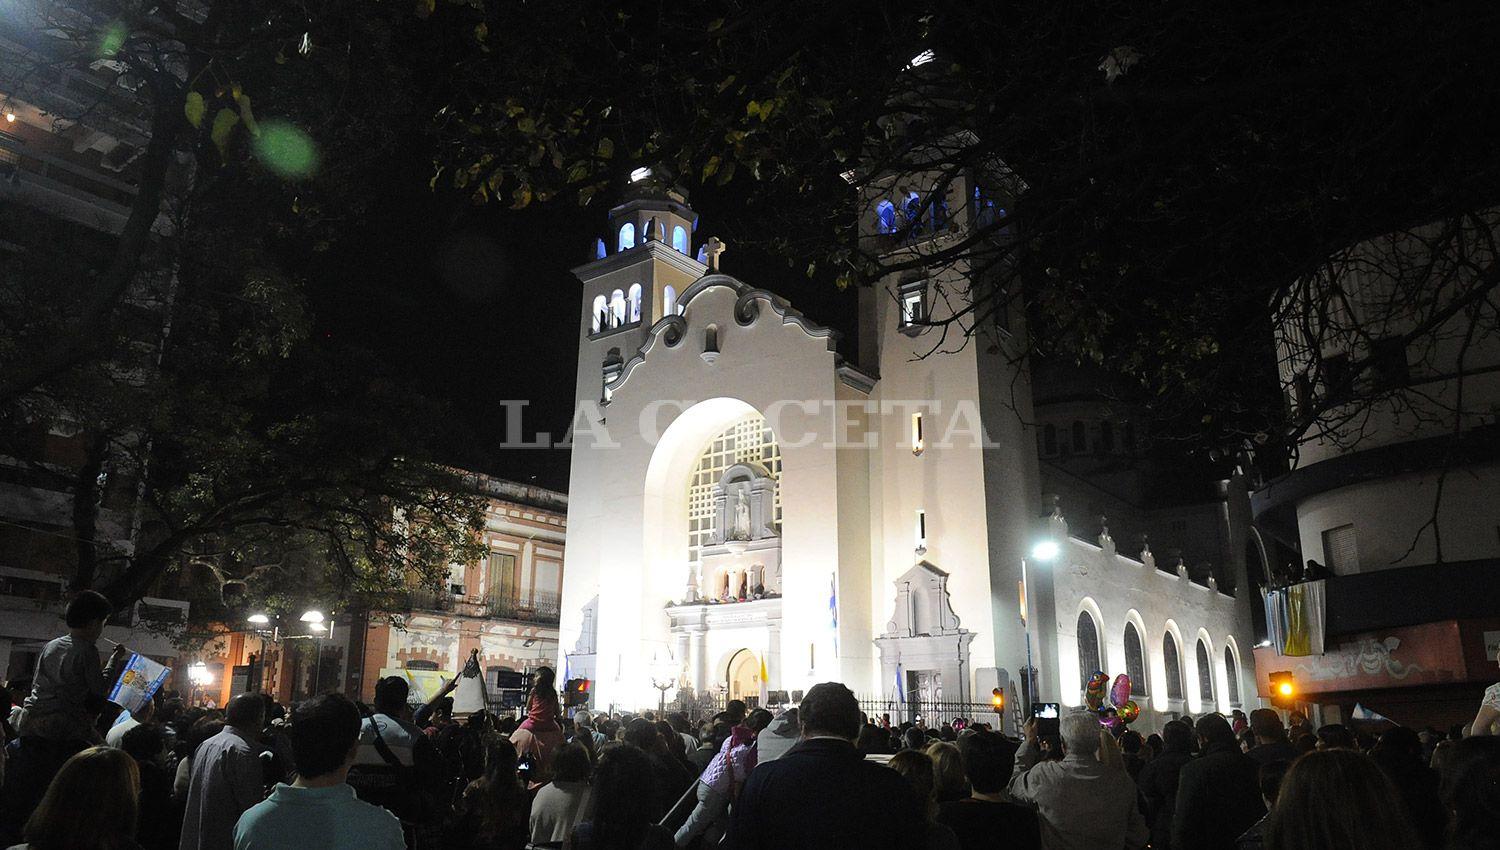 DENUNCIA EN CONTRA. La Justicia investiga el presunto caso de abuso en la Basílica de La Merced. LA GACETA / FOTO DE HÉCTOR PERALTA